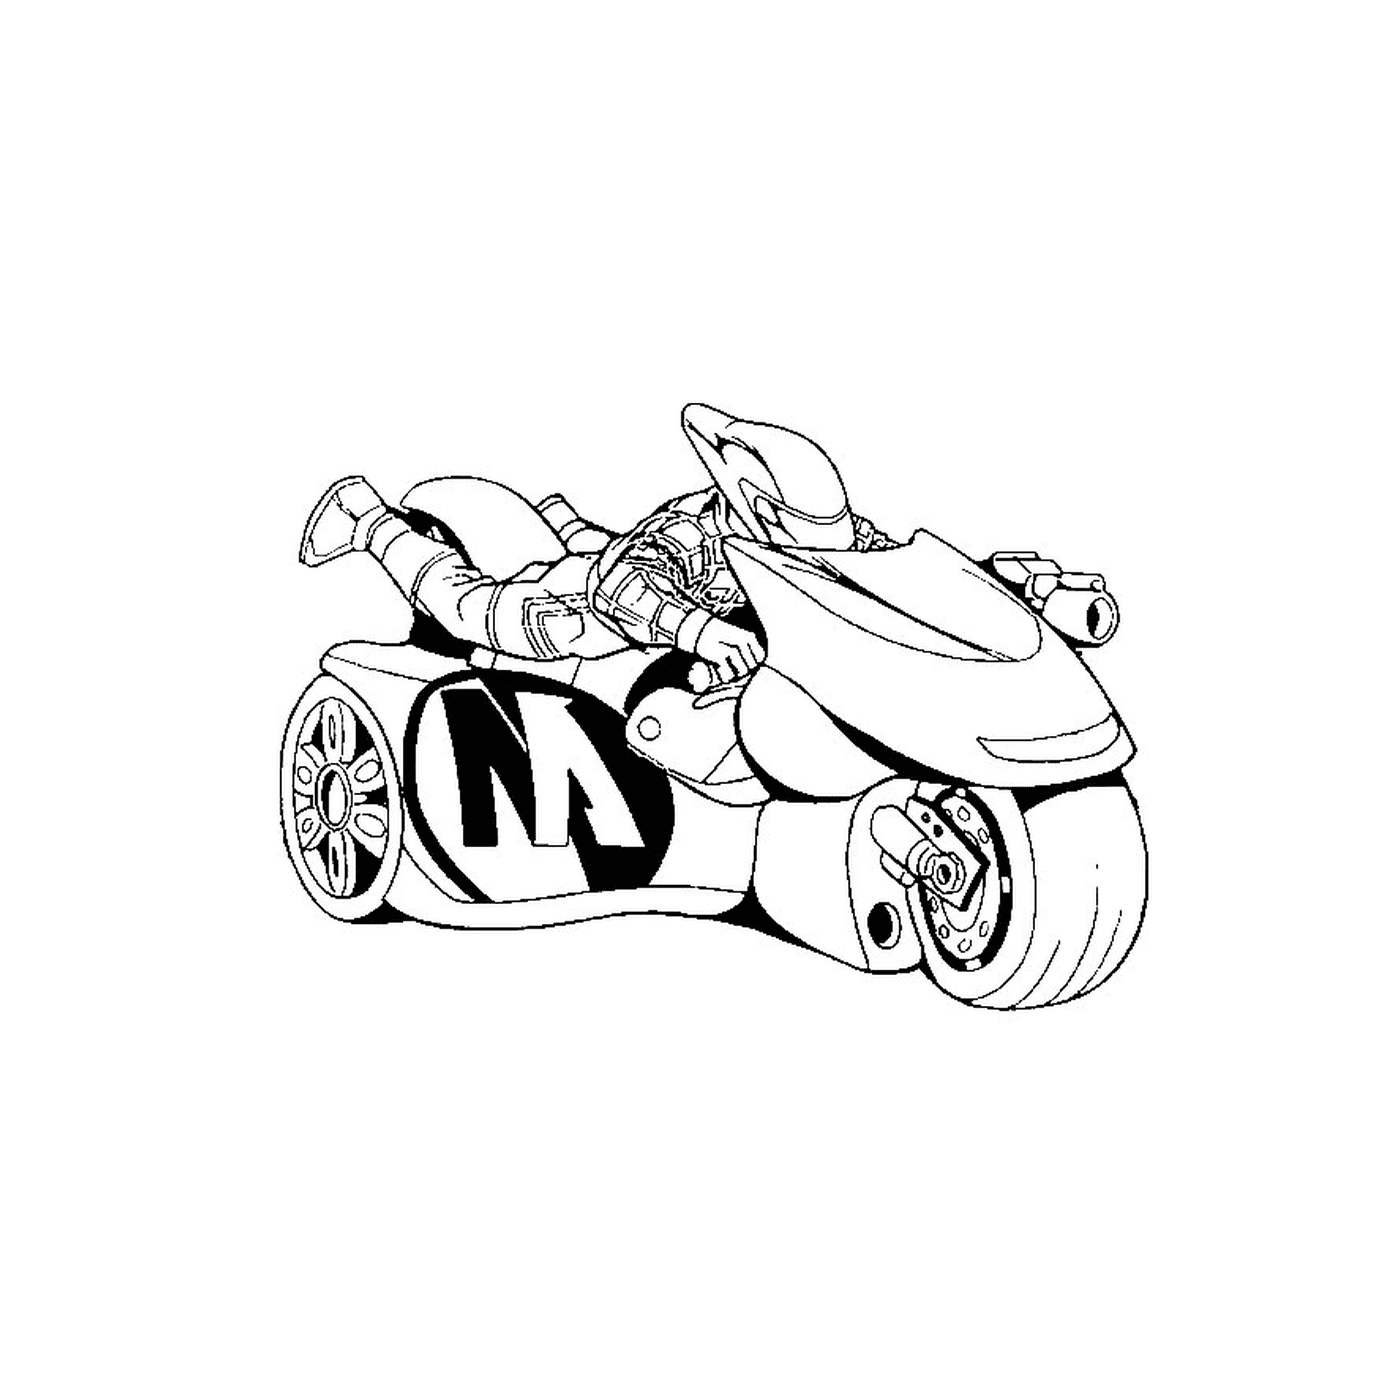  Uma motocicleta Batman 